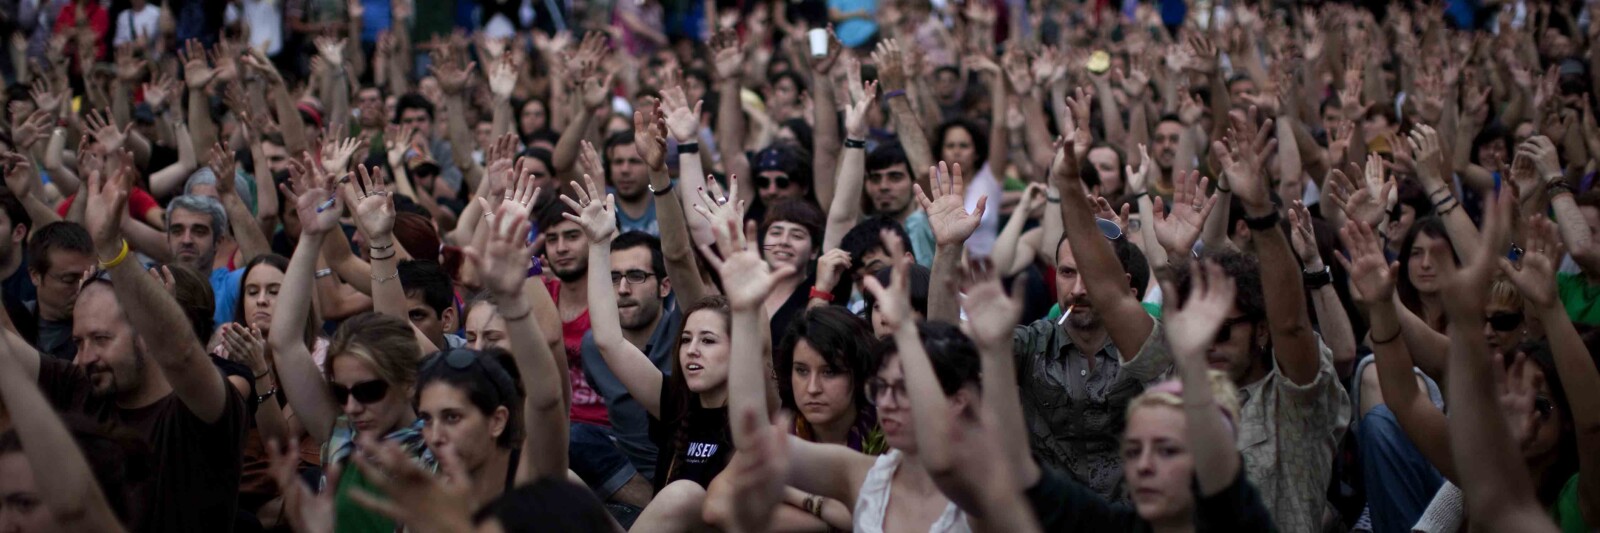 הצבעה ב'אסיפת עם' במדריד במהלך המחאה ב-2011. "הרעיון היה שמבטלים את מוסד הייצוג. כל אחד מייצג את עצמו בקבלת ההחלטות" (צילום: AP Photo/Emilio Morenatti)